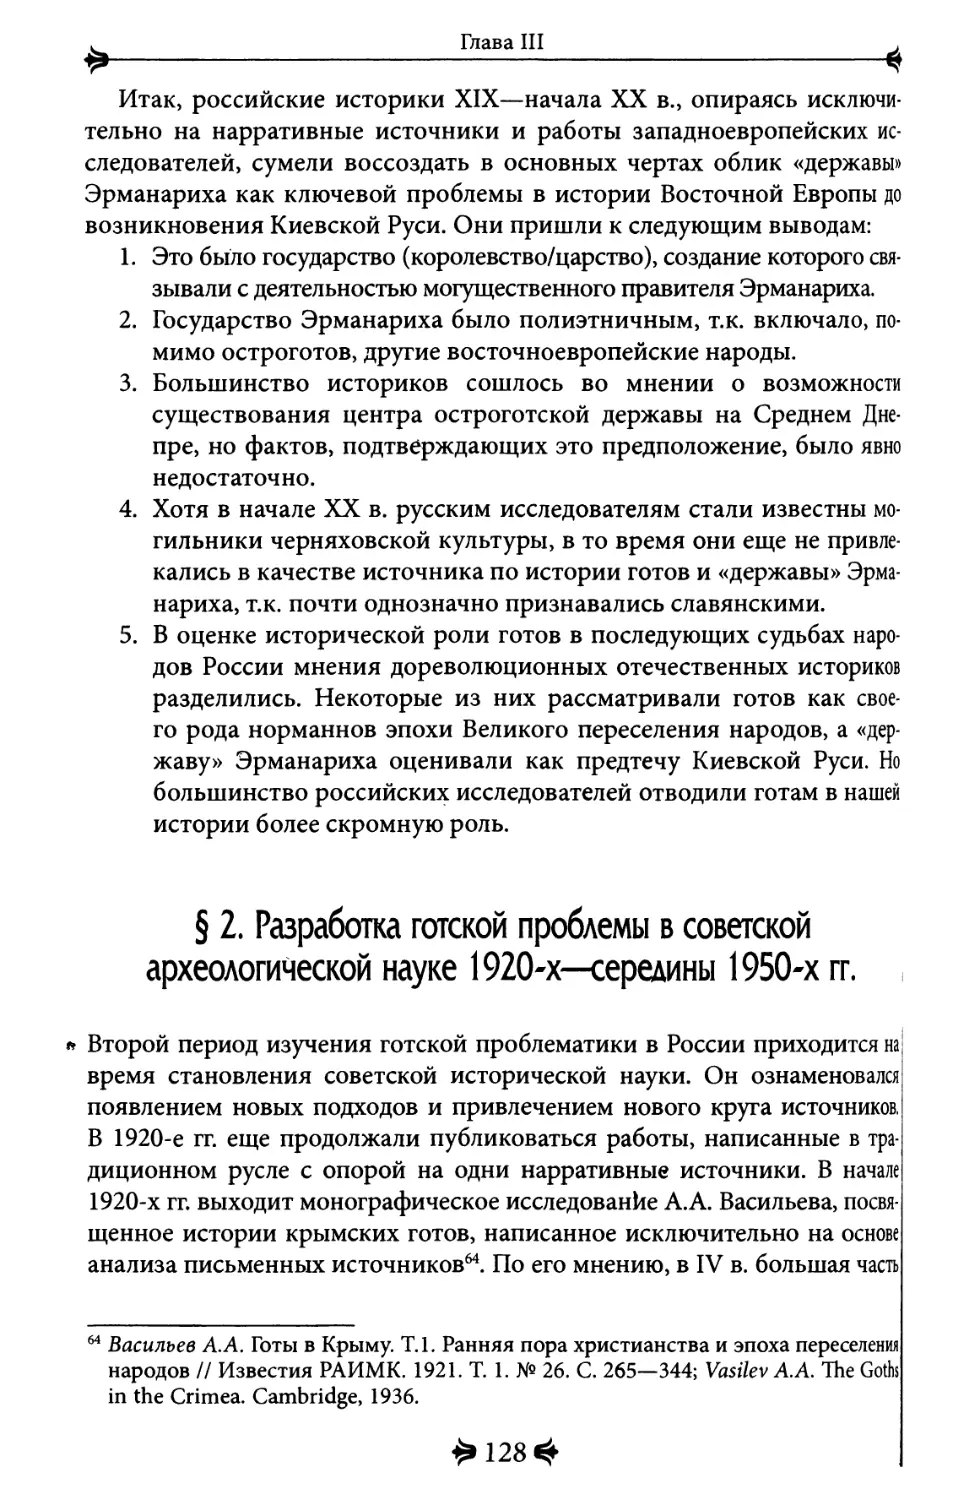 2. Разработка готской проблемы в советской археологической науке 1920-х - середины 1950-х гг.